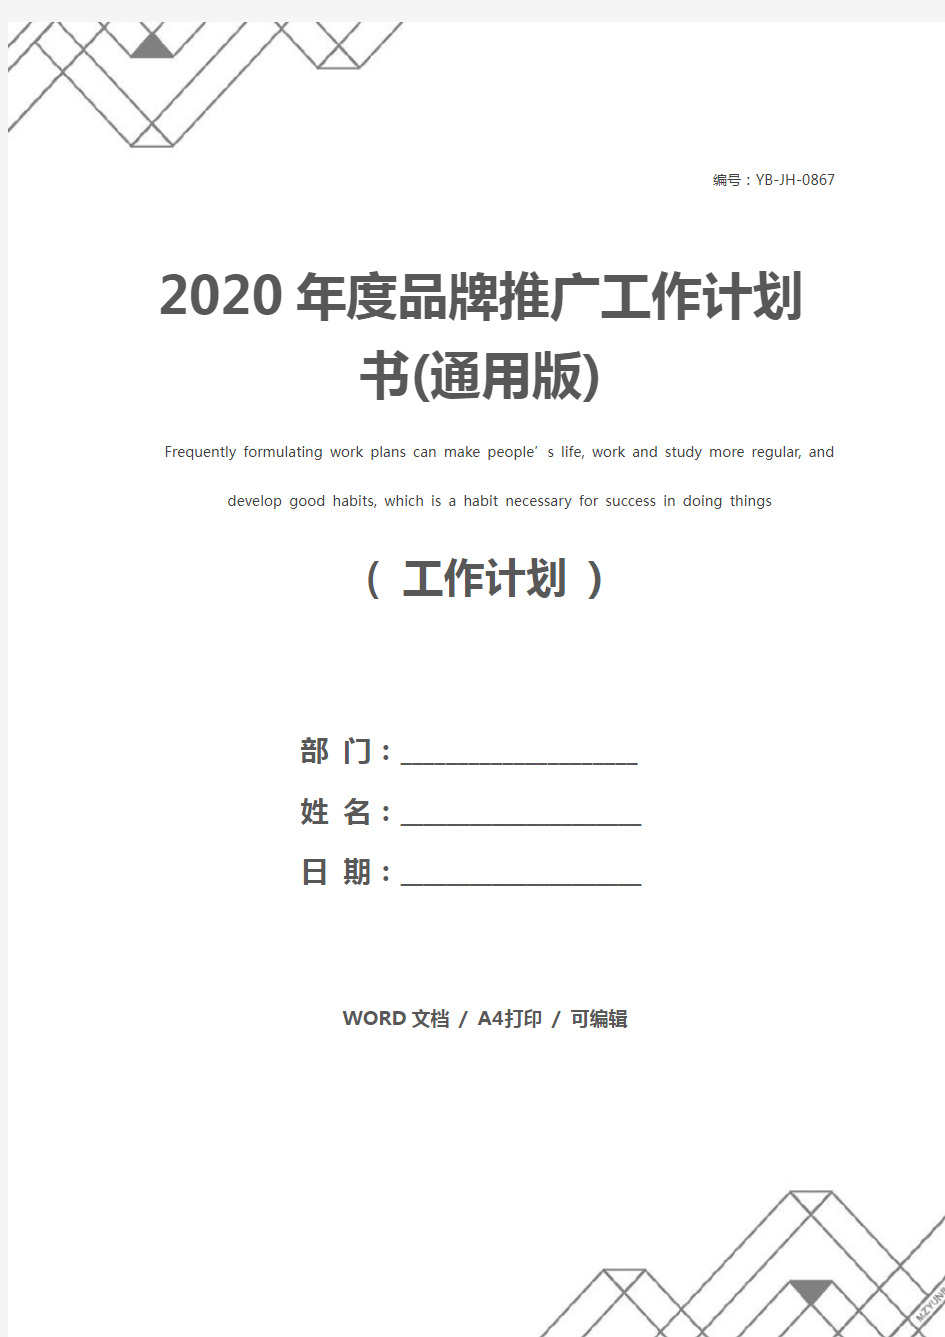 2020年度品牌推广工作计划书(通用版)